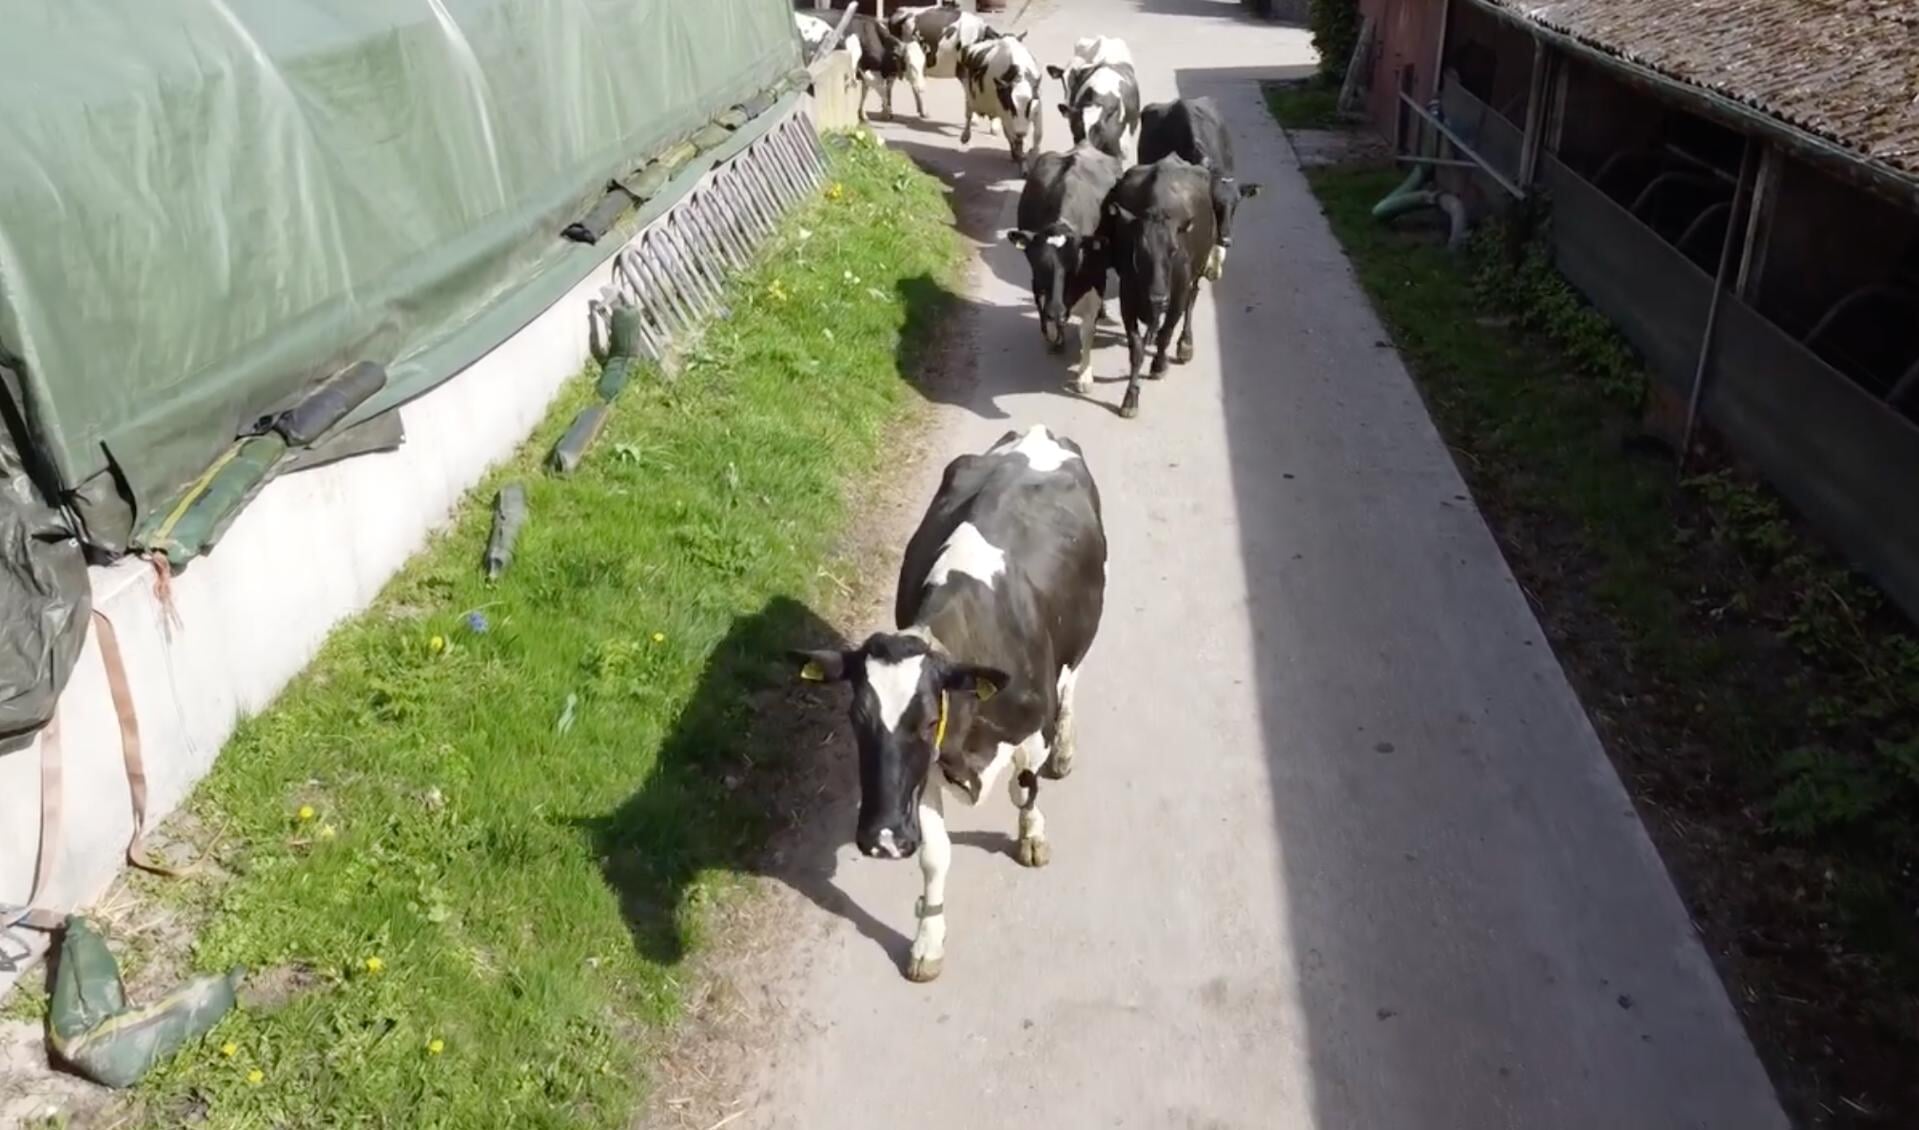 De deur gaat ging open en rennend, huppelend en loeiend van plezier gingen de koeien weer de wei in.